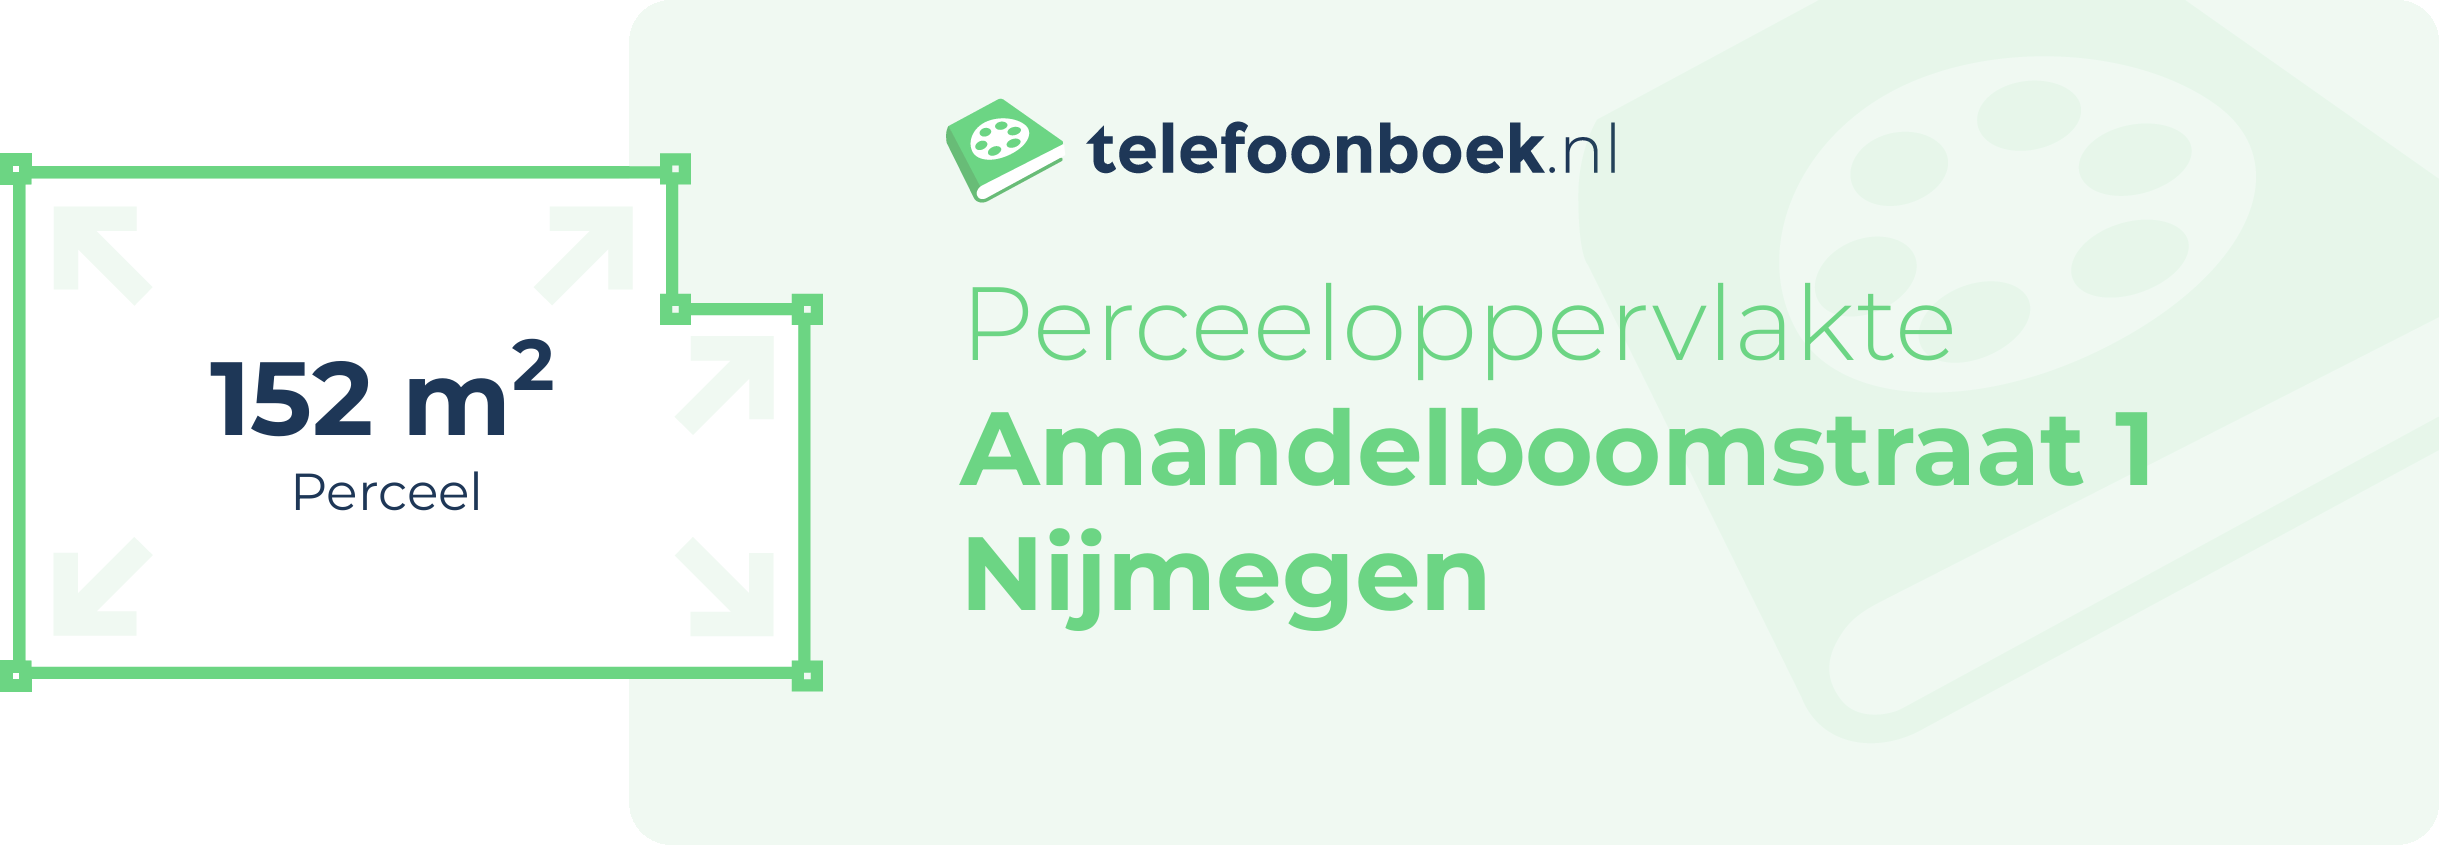 Perceeloppervlakte Amandelboomstraat 1 Nijmegen